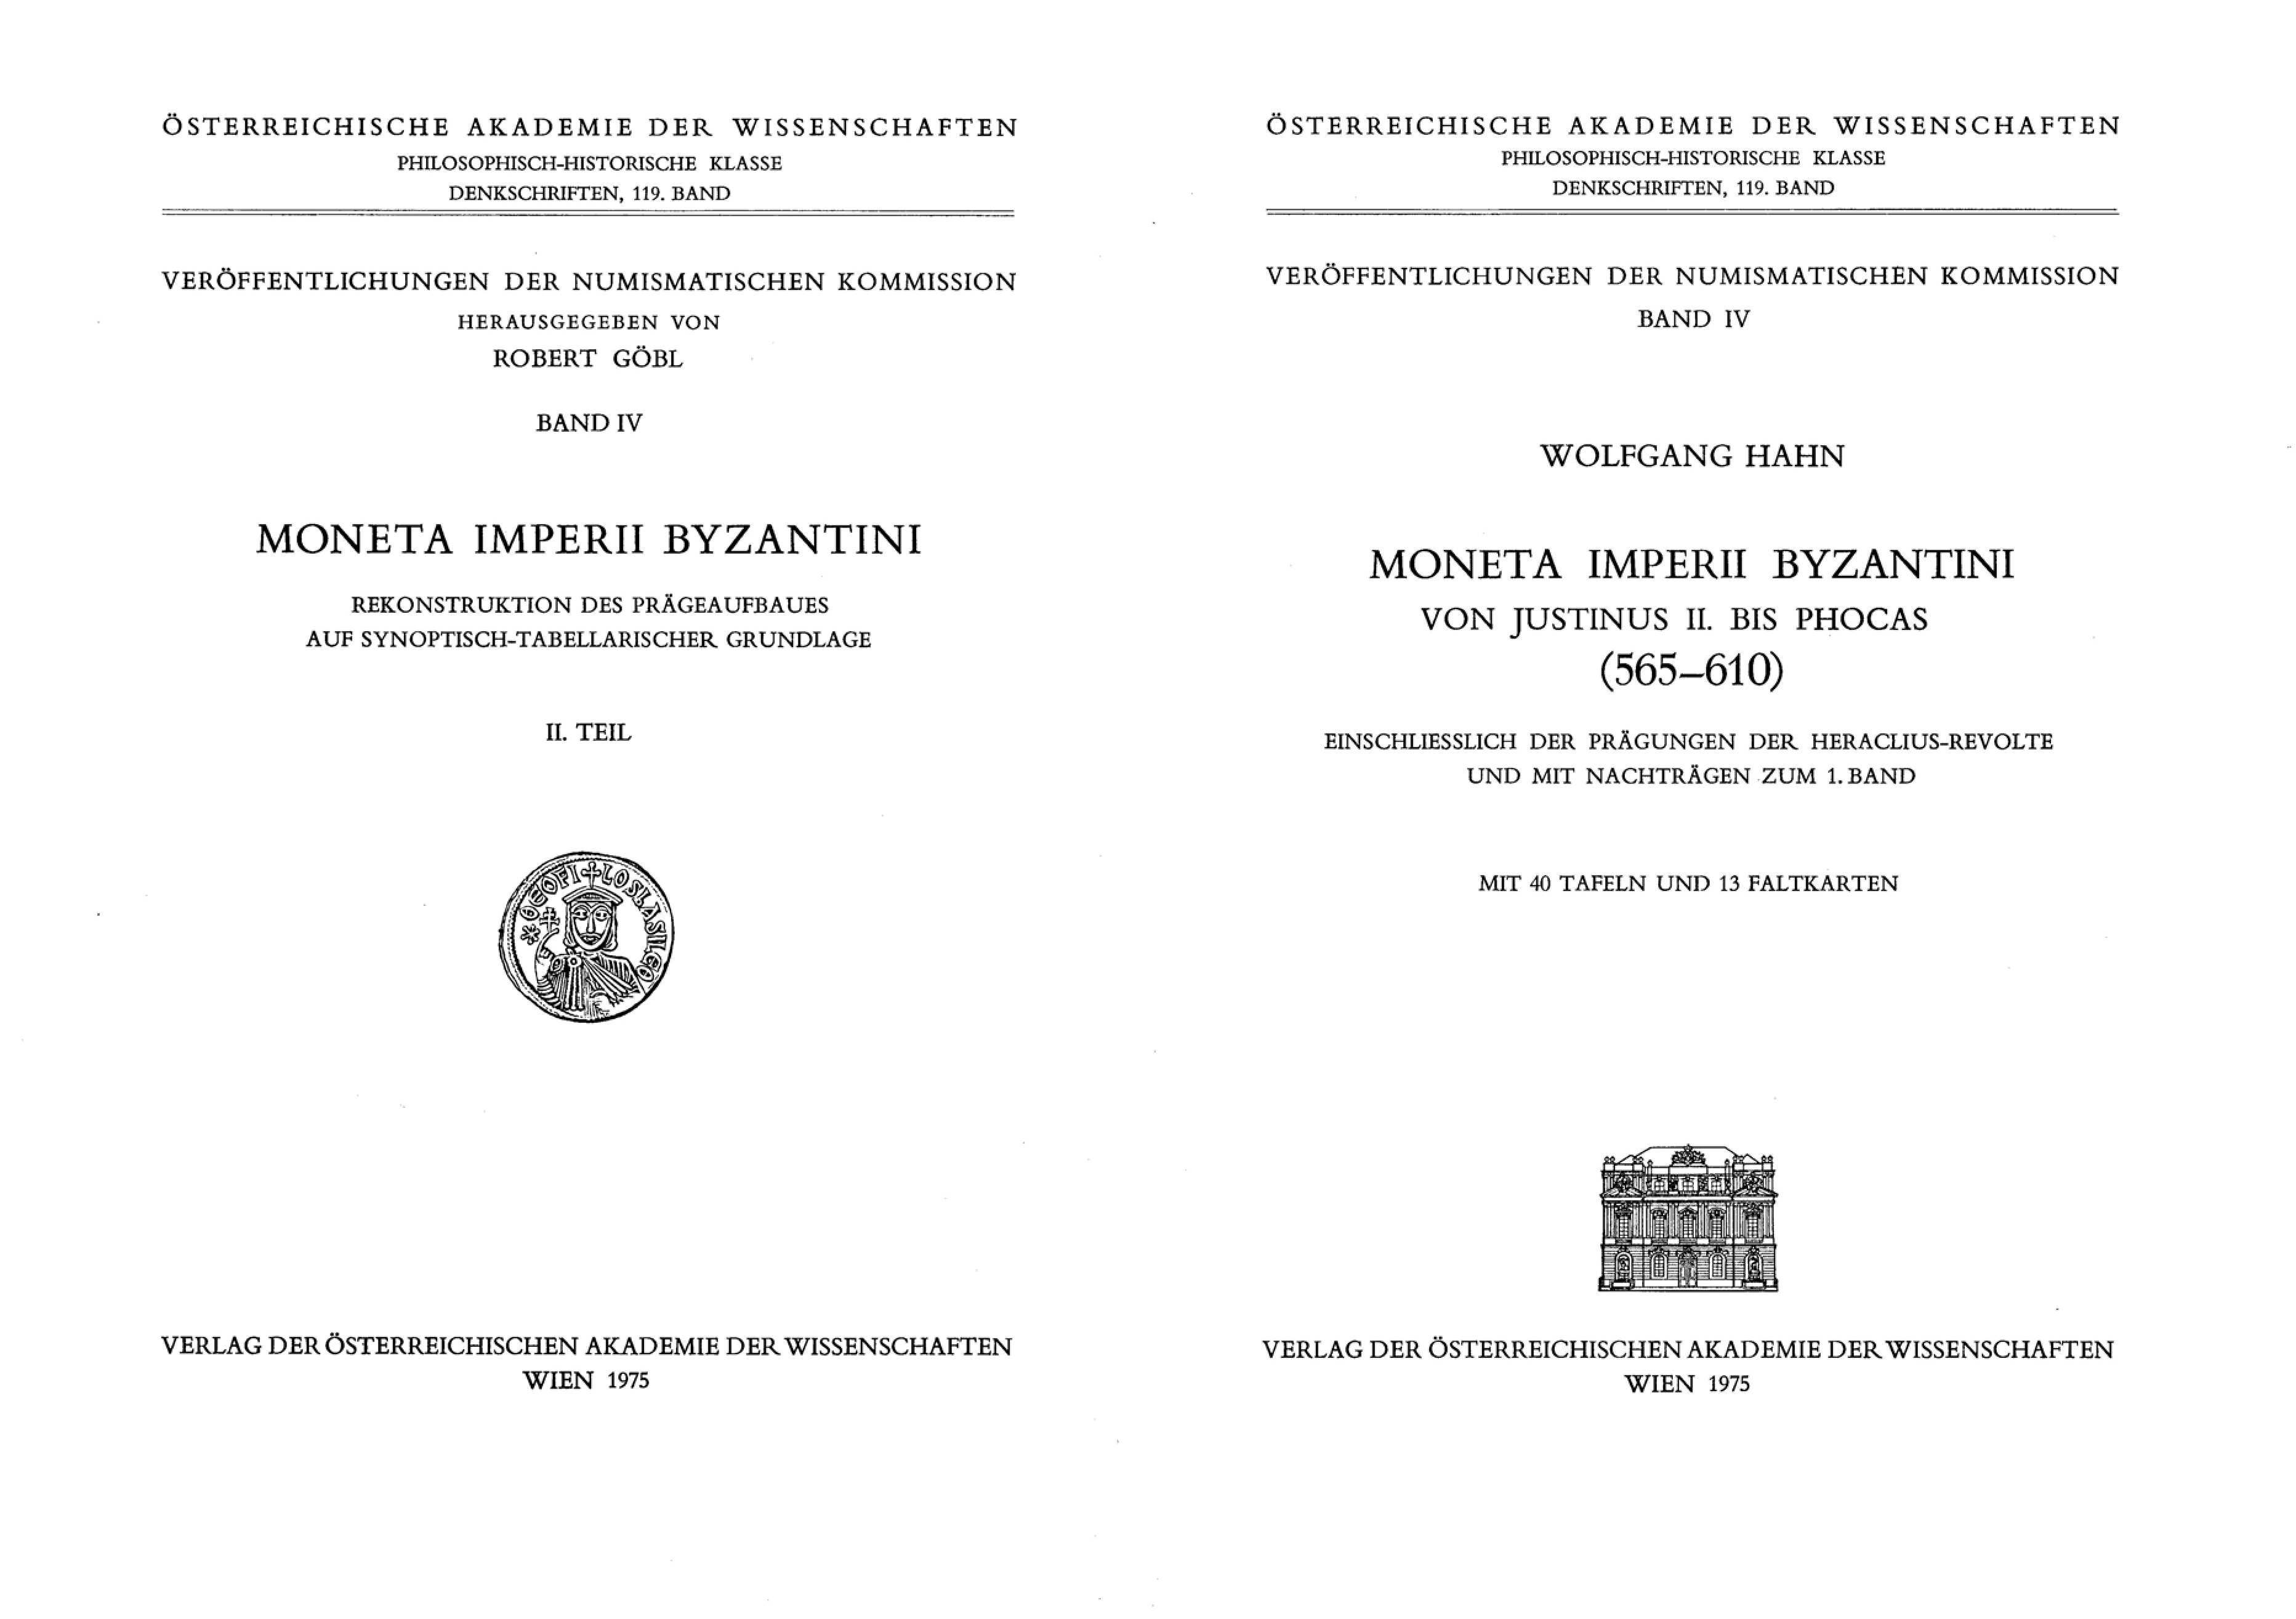 Moneta Imperii Byzantini - Wolfgang Hahn - Band 2